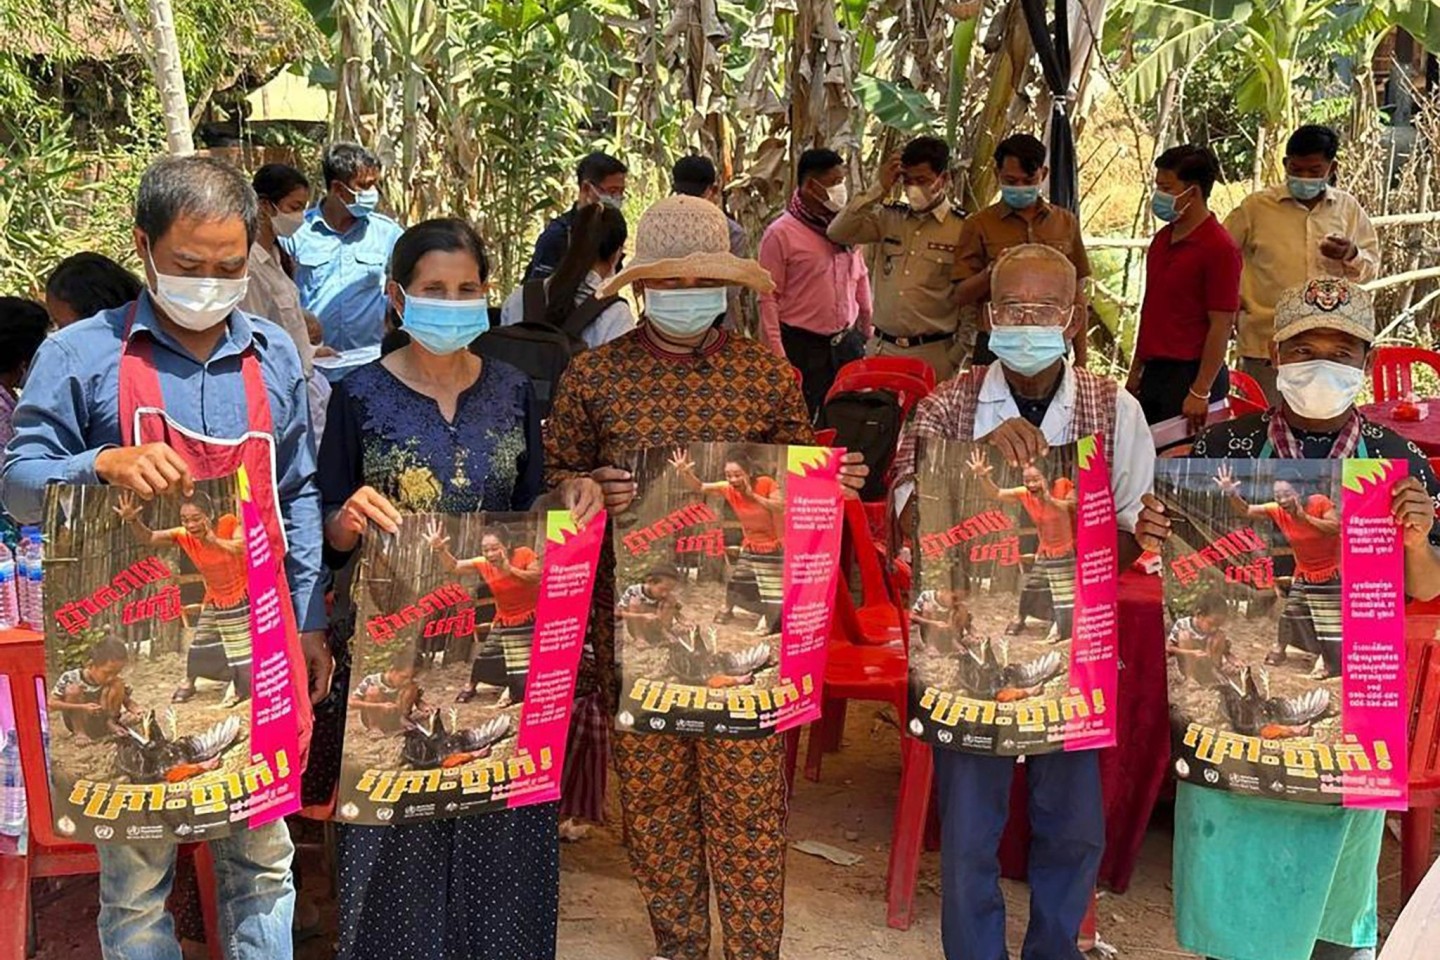 Dorfbewohner in der östlichen Provinz Prey Veng mit Plakaten, die auf die Bedrohung durch das Vogelgrippevirus aufmerksam machen.